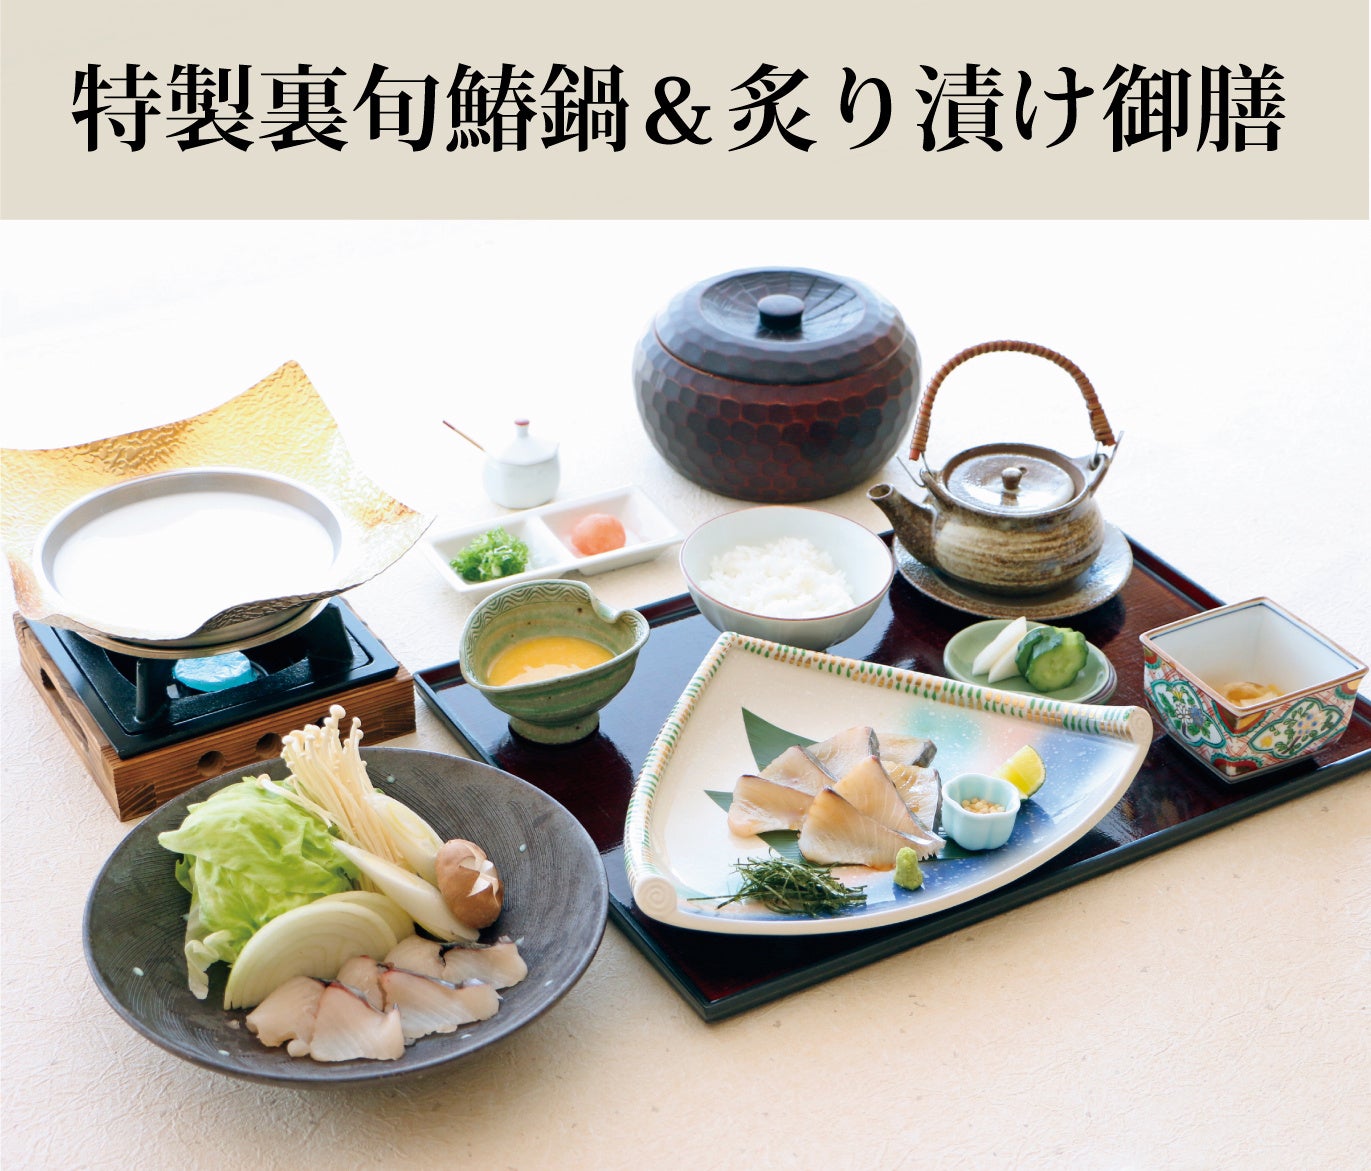 高級日本酒ブランド「MINAKI」✖️「JR東海」フォーシーズンズホテル東京大手町にて特別な日本酒体験&ペアリングディナーイベントを開催